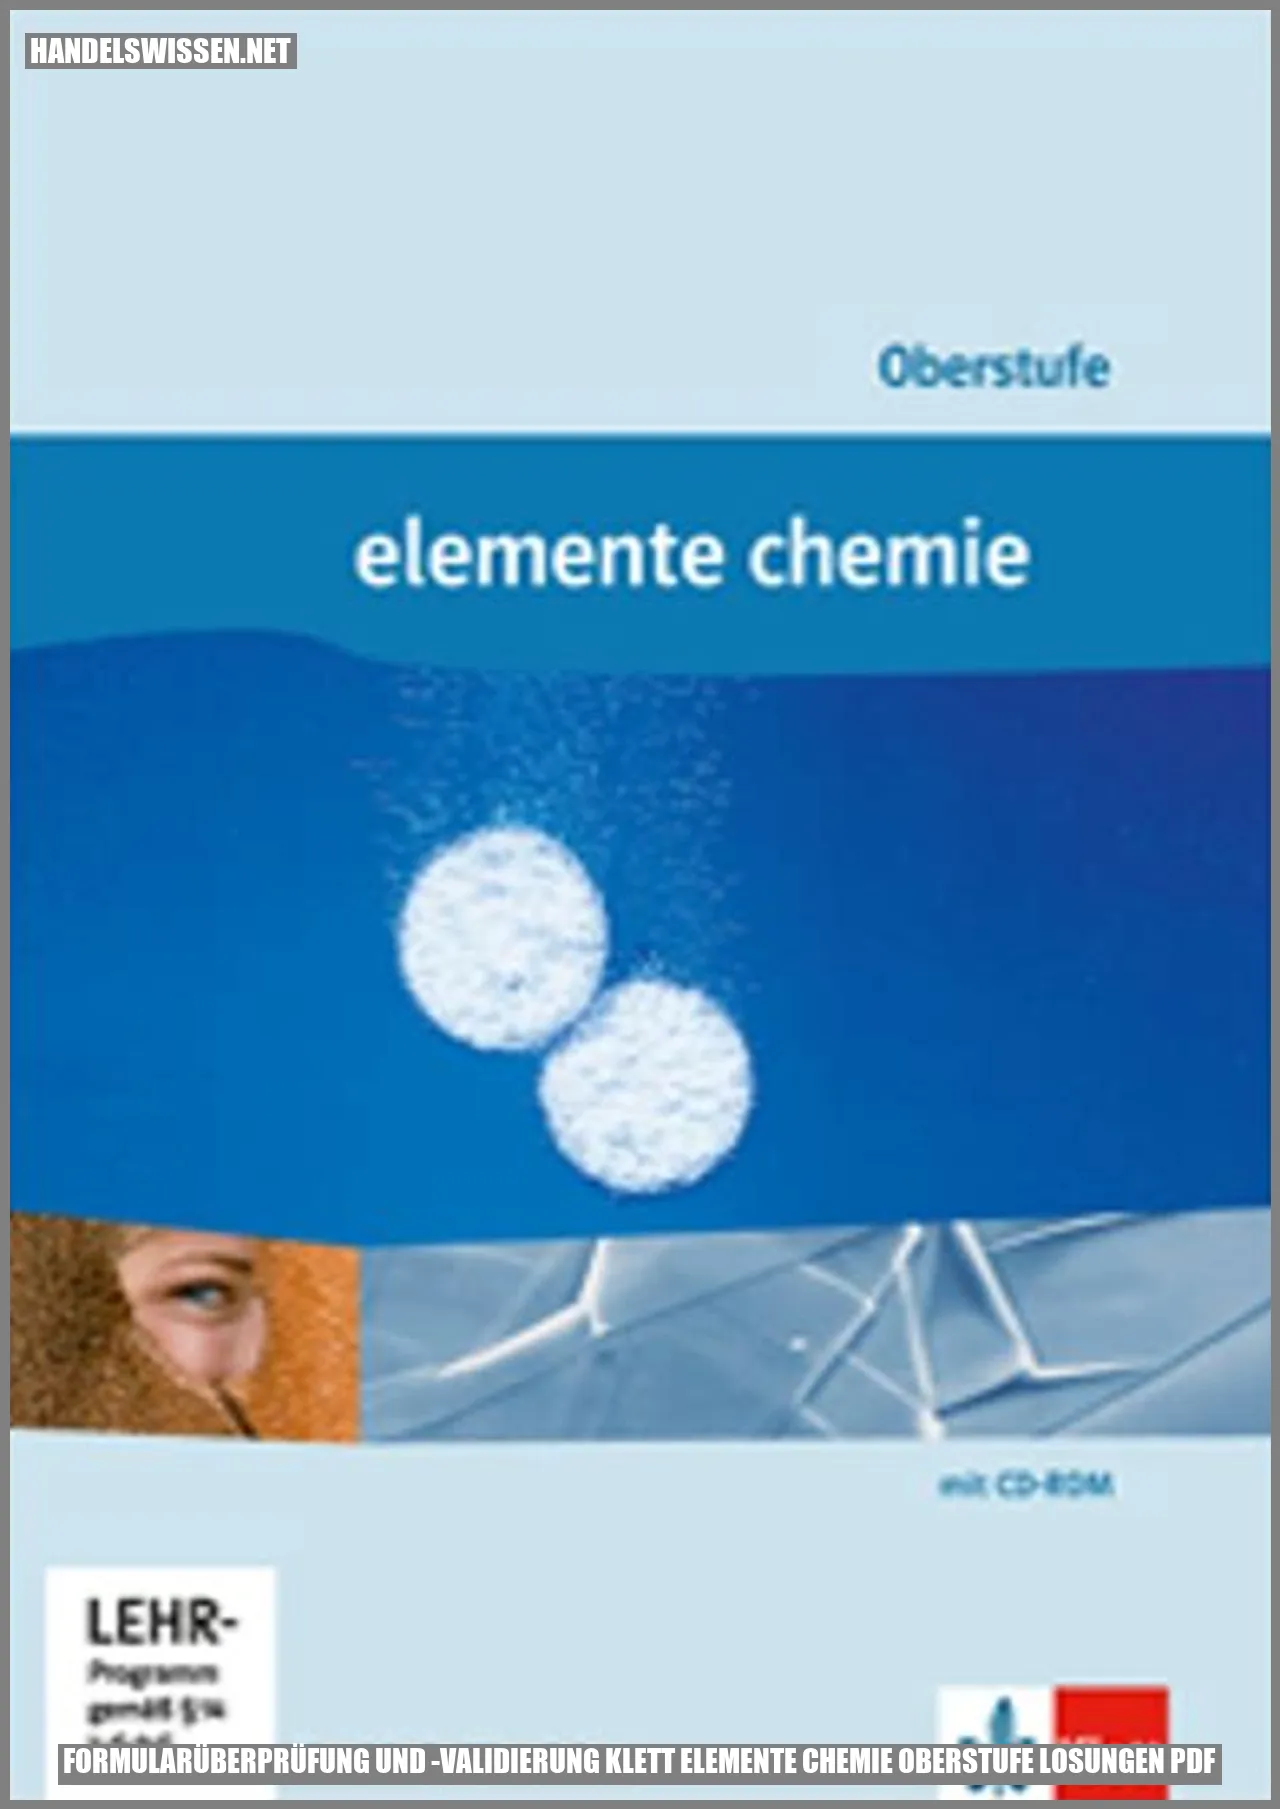 Formularüberprüfung und -validierung klett elemente chemie oberstufe losungen pdf